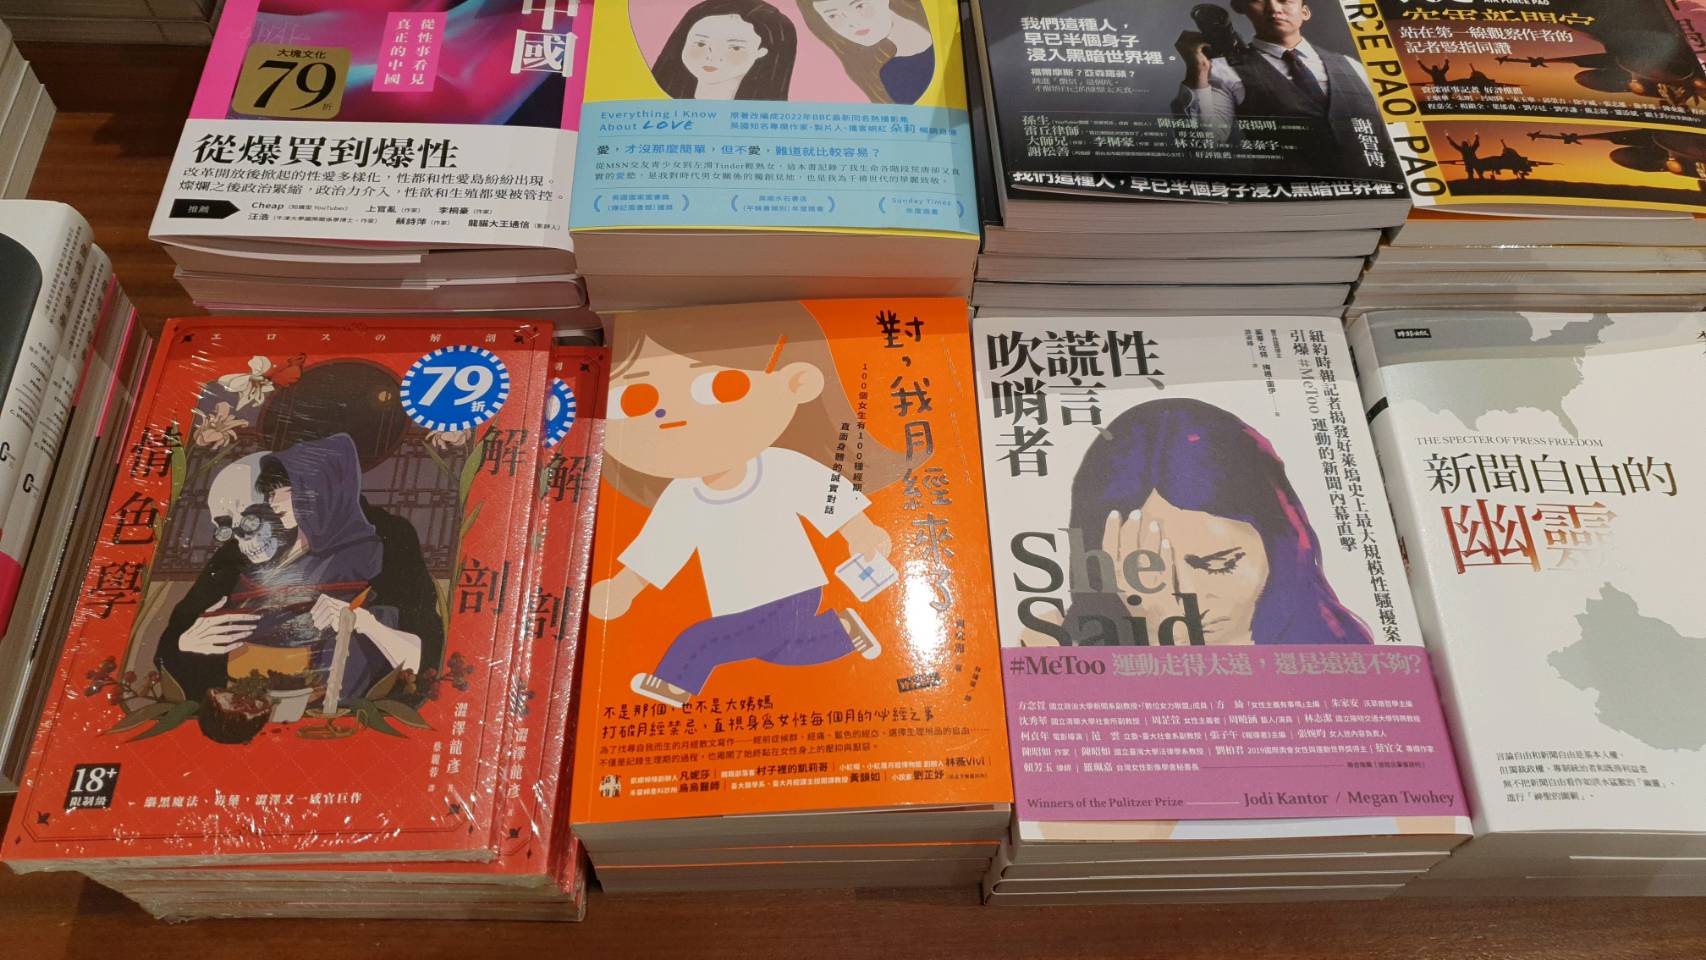 < 대만 서점의 여성주의 부스에 전시된 도서 '네, 저 생리하는데요(對, 我月經來了)' - 출처: 통신원 촬영 >